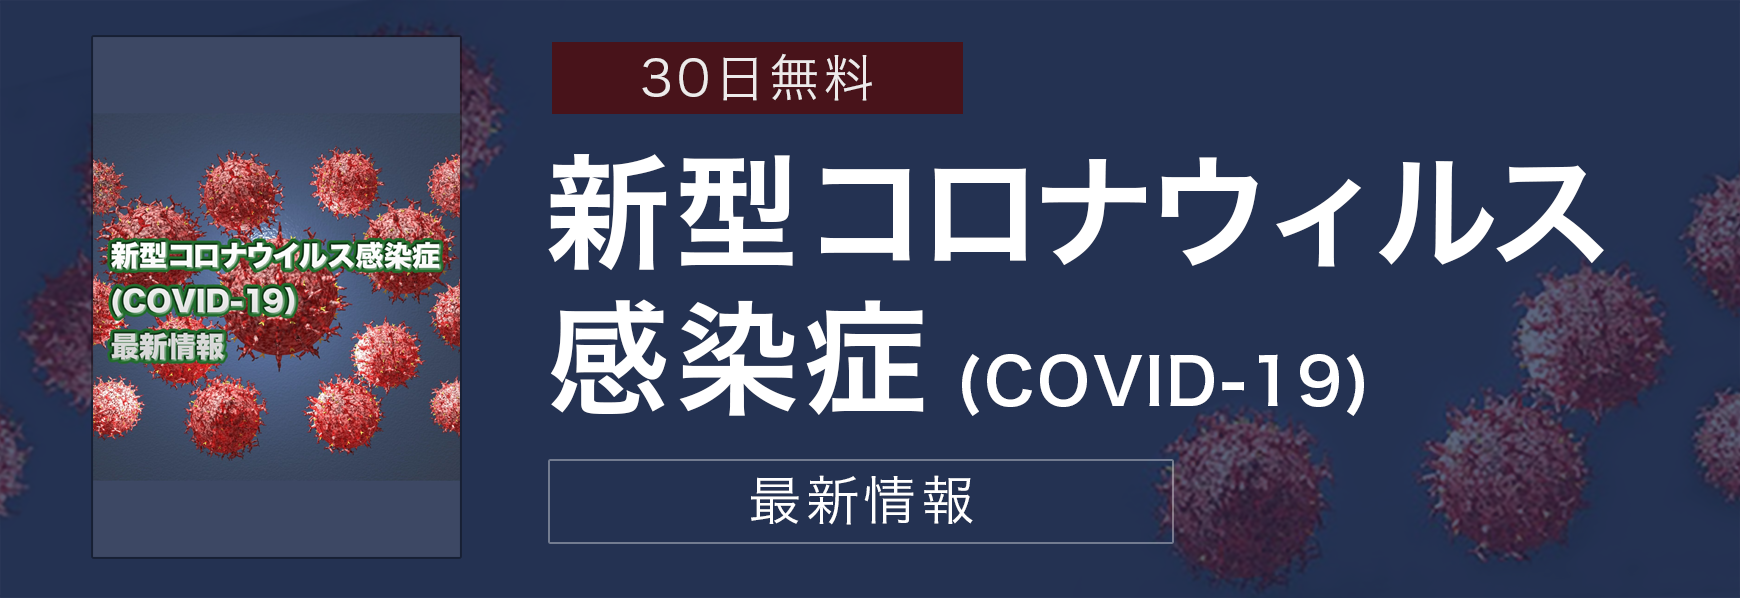 30日無料新型コロナウィルス感染症(COVID-19)最新情報